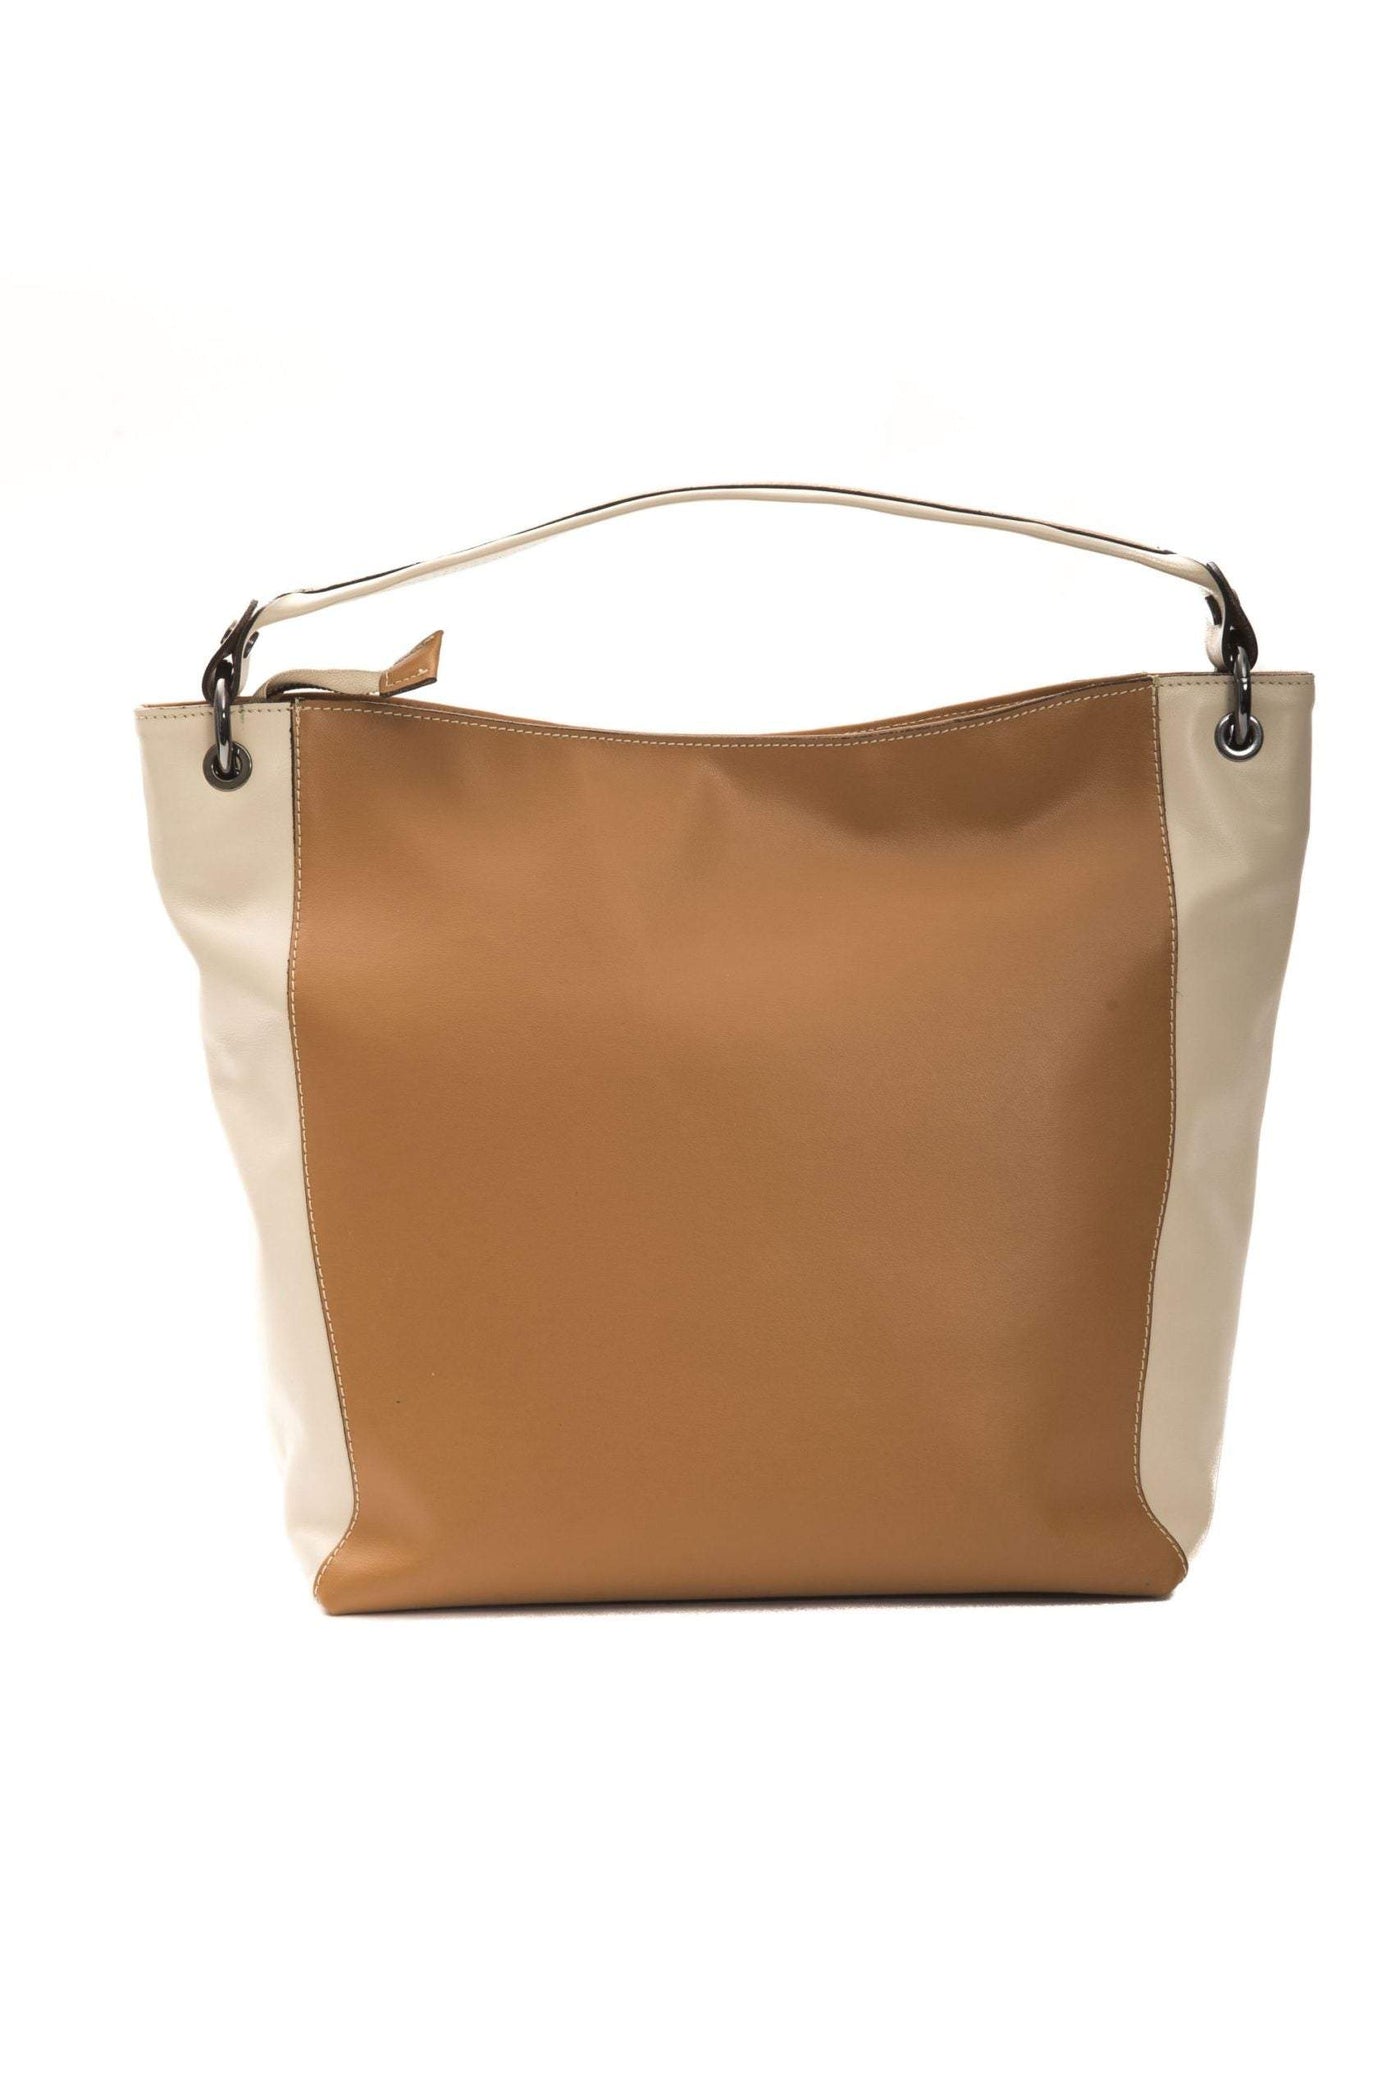 Pompei Donatella Brown Leather Shoulder Bag Brown, feed-1, Pompei Donatella, Shoulder Bags - Women - Bags at SEYMAYKA